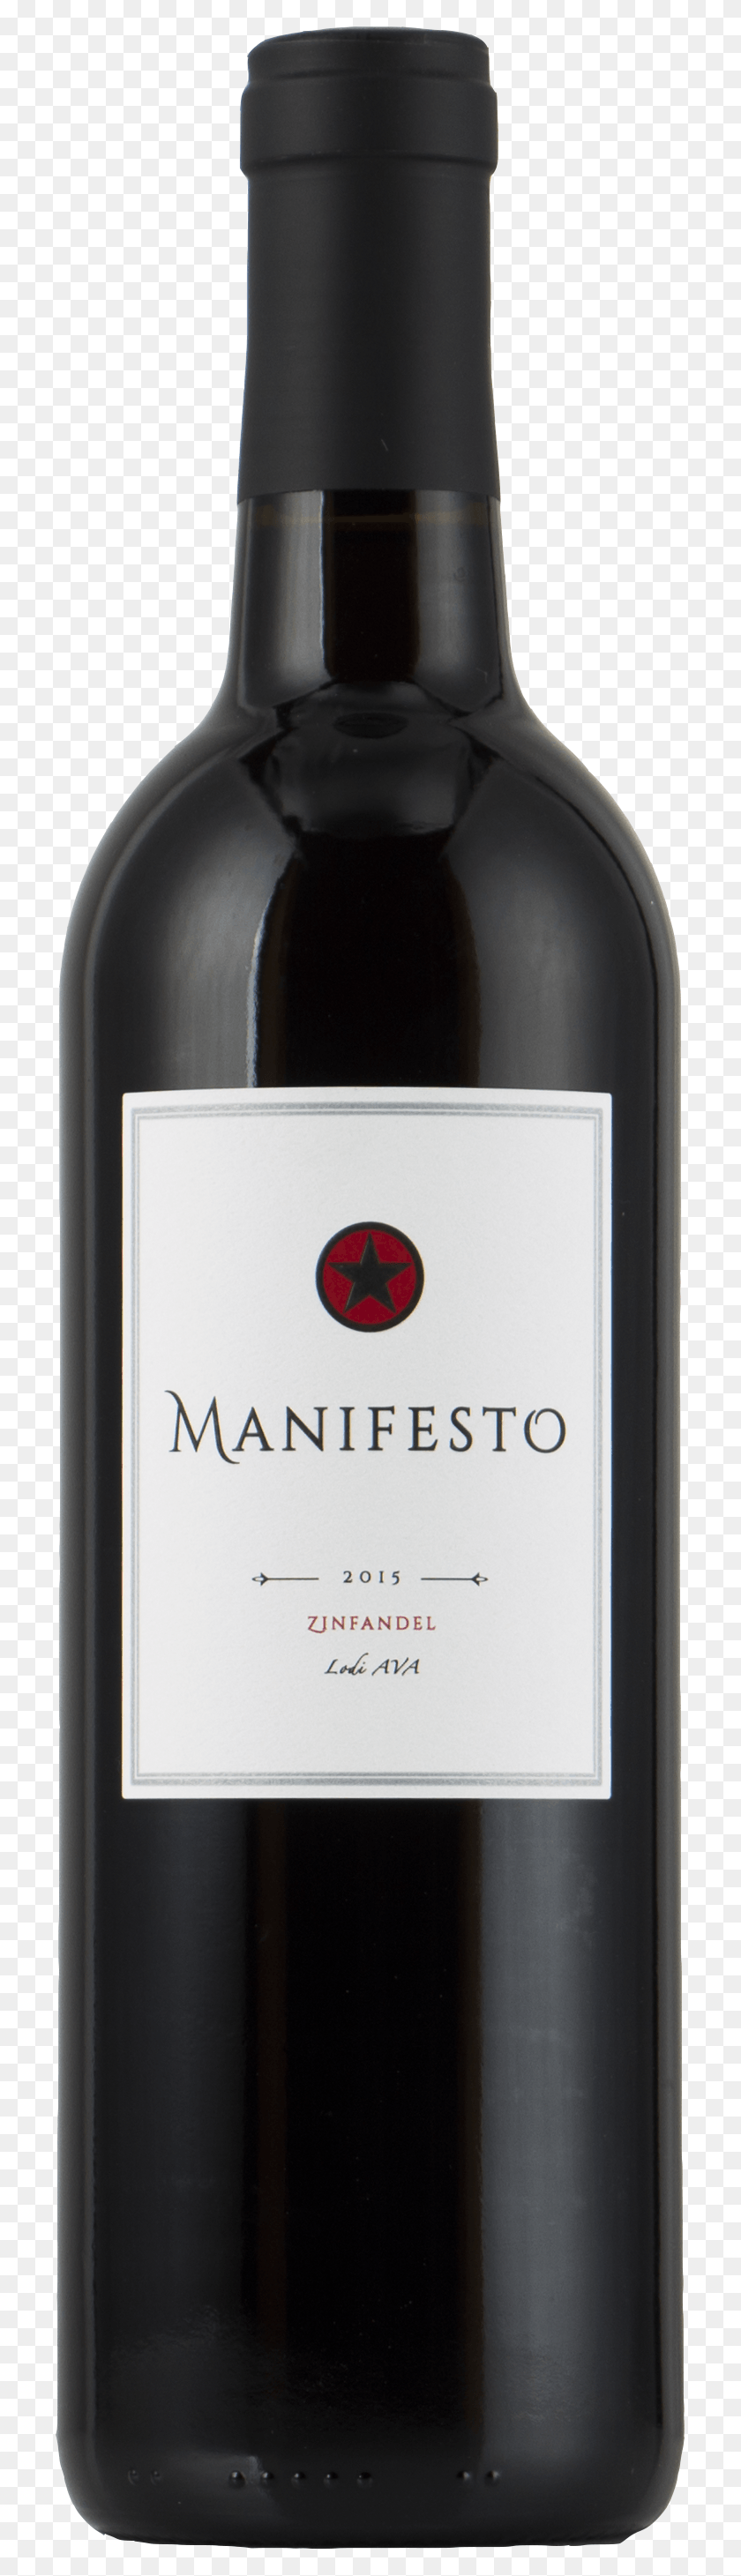 713x2861 Trade Amp Media 2015 Manifesto Zinfandel, Вино, Алкоголь, Напитки Hd Png Скачать